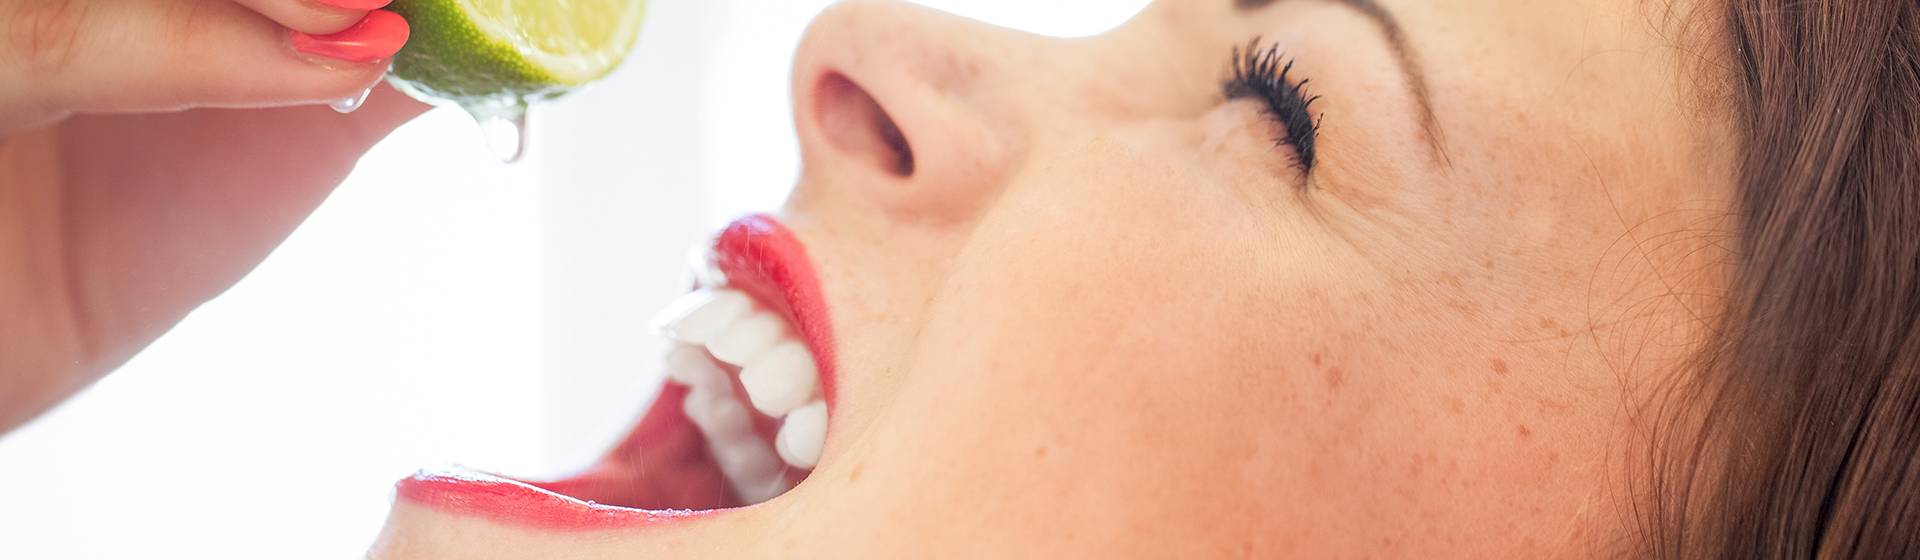 Parodontalbehandlungen Oldenburger Zahnärzte